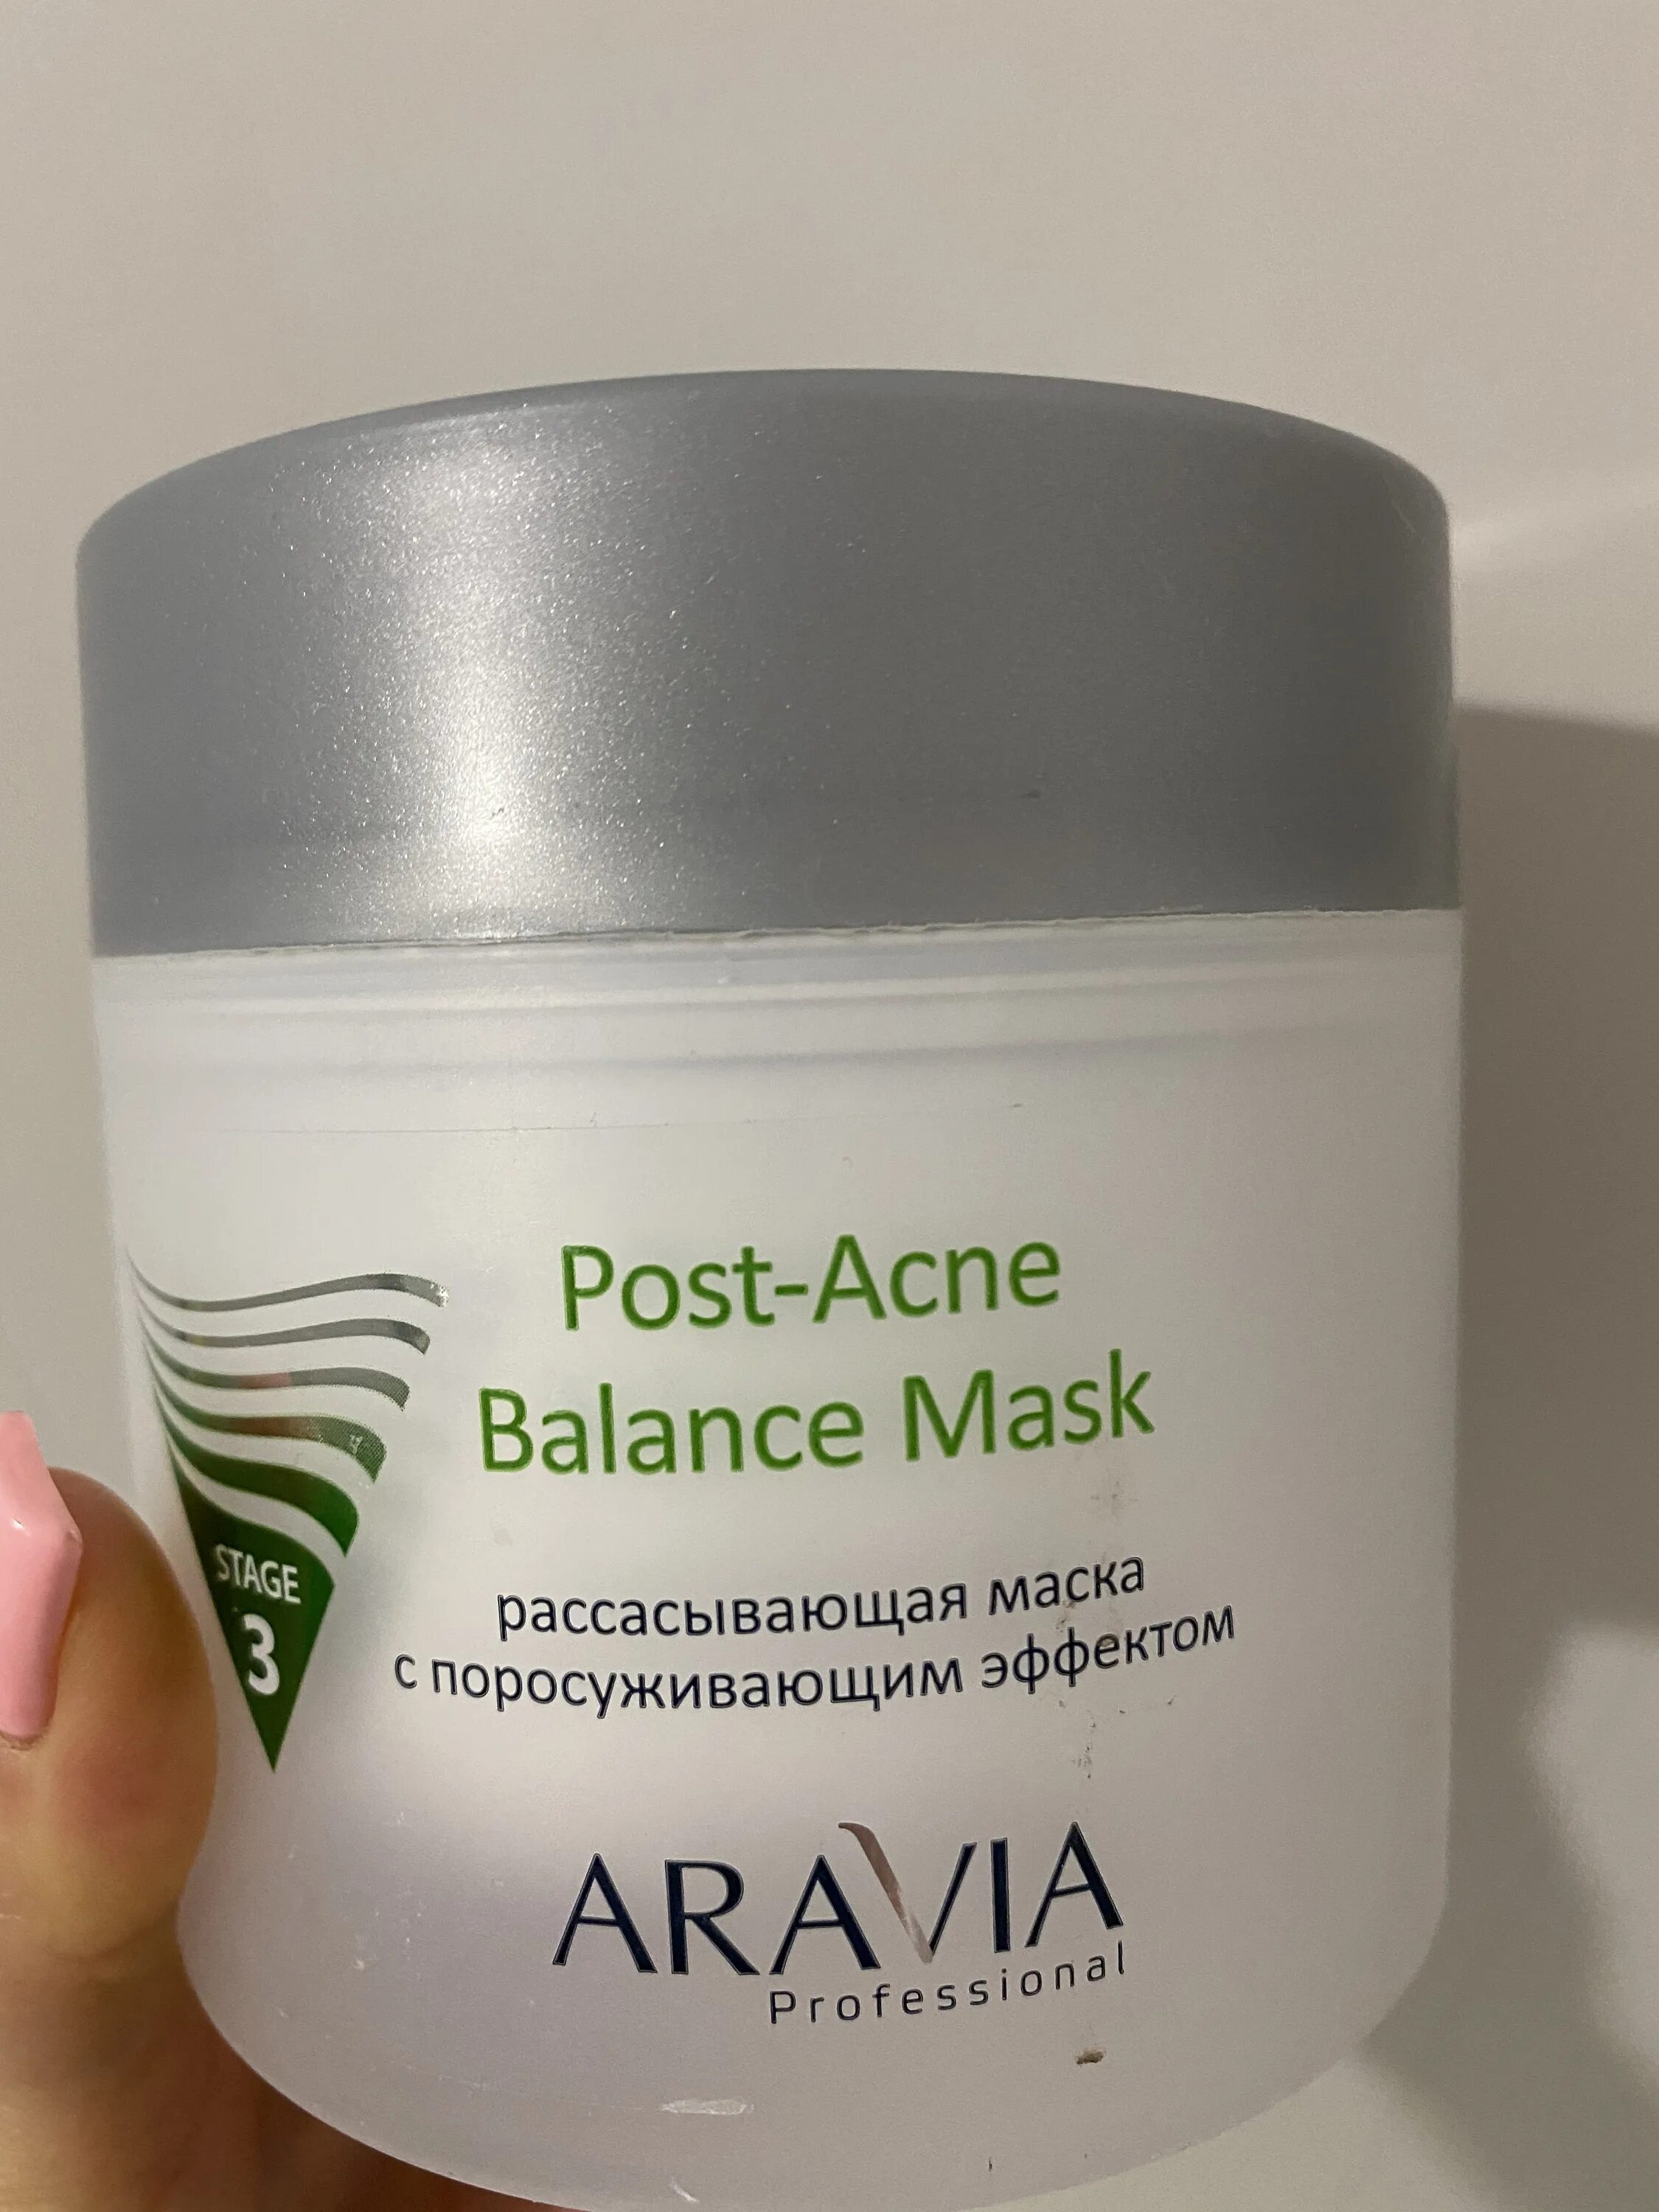 Аравия рассасывающая маска отзывы. Aravia Post acne Balance Mask. Маска Aravia Anti-acne. Аравия рассасывающая маска с поросуживающим эффектом. Аравия от пигментации.